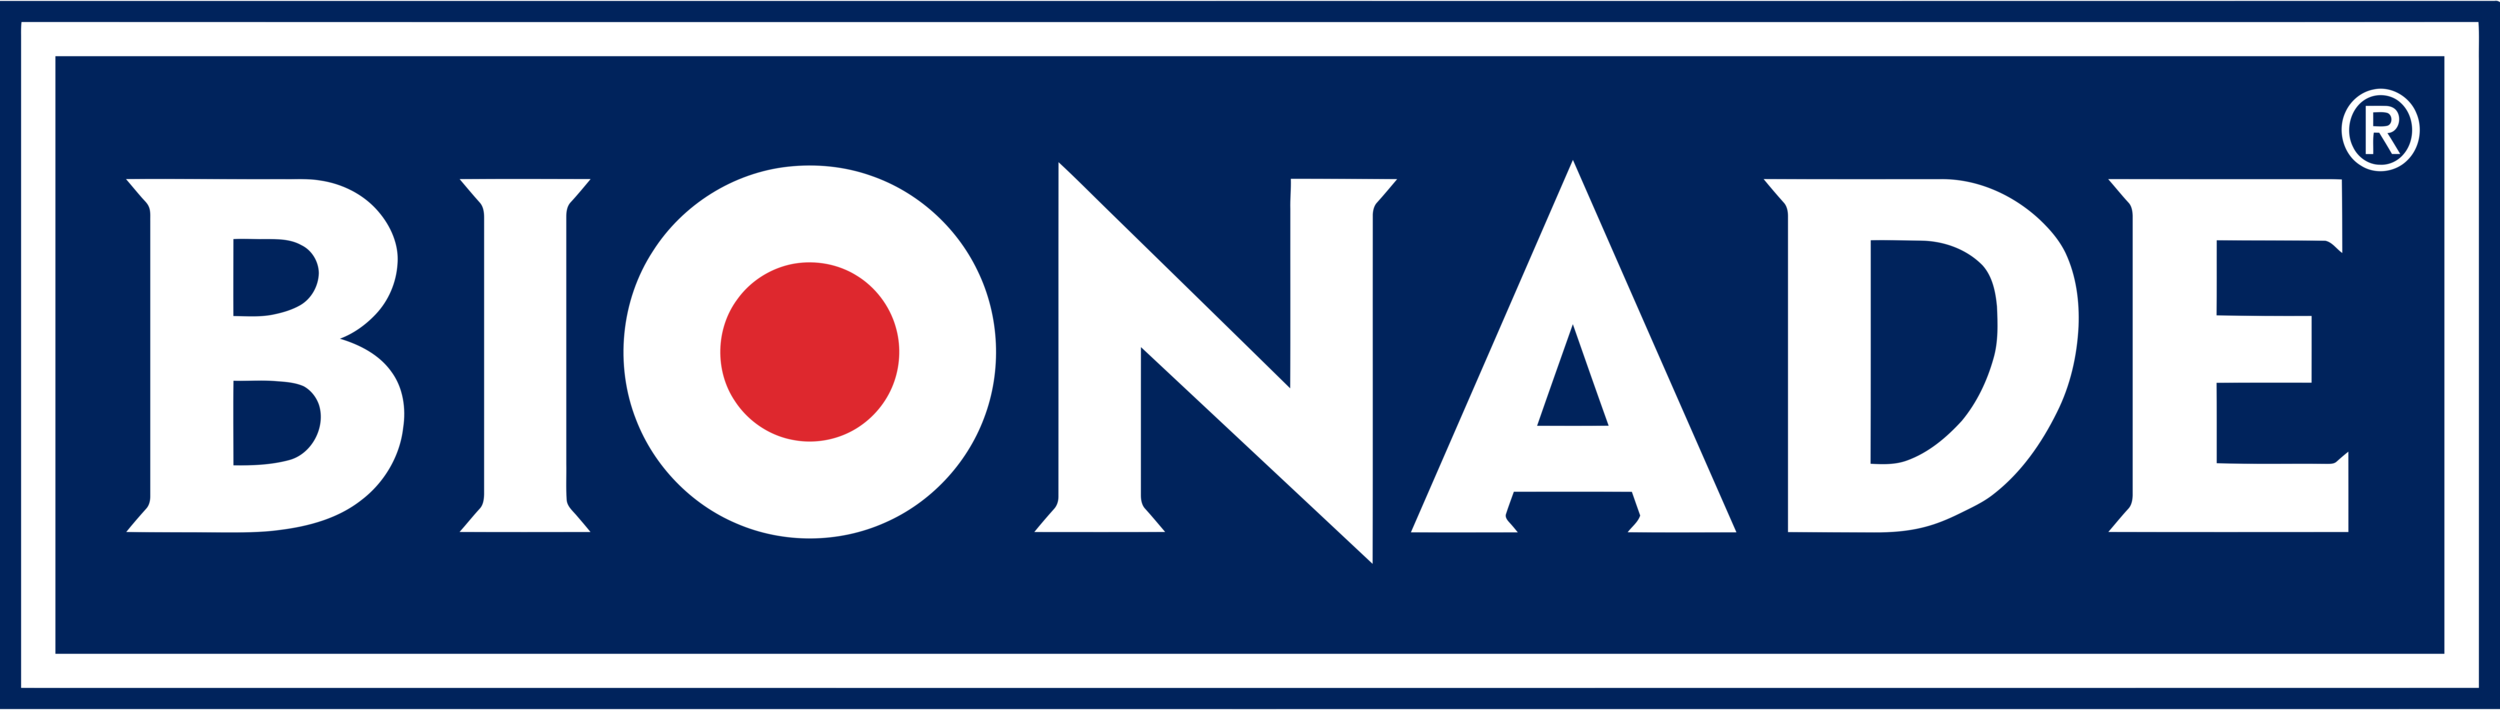 Bionade_Logo.png